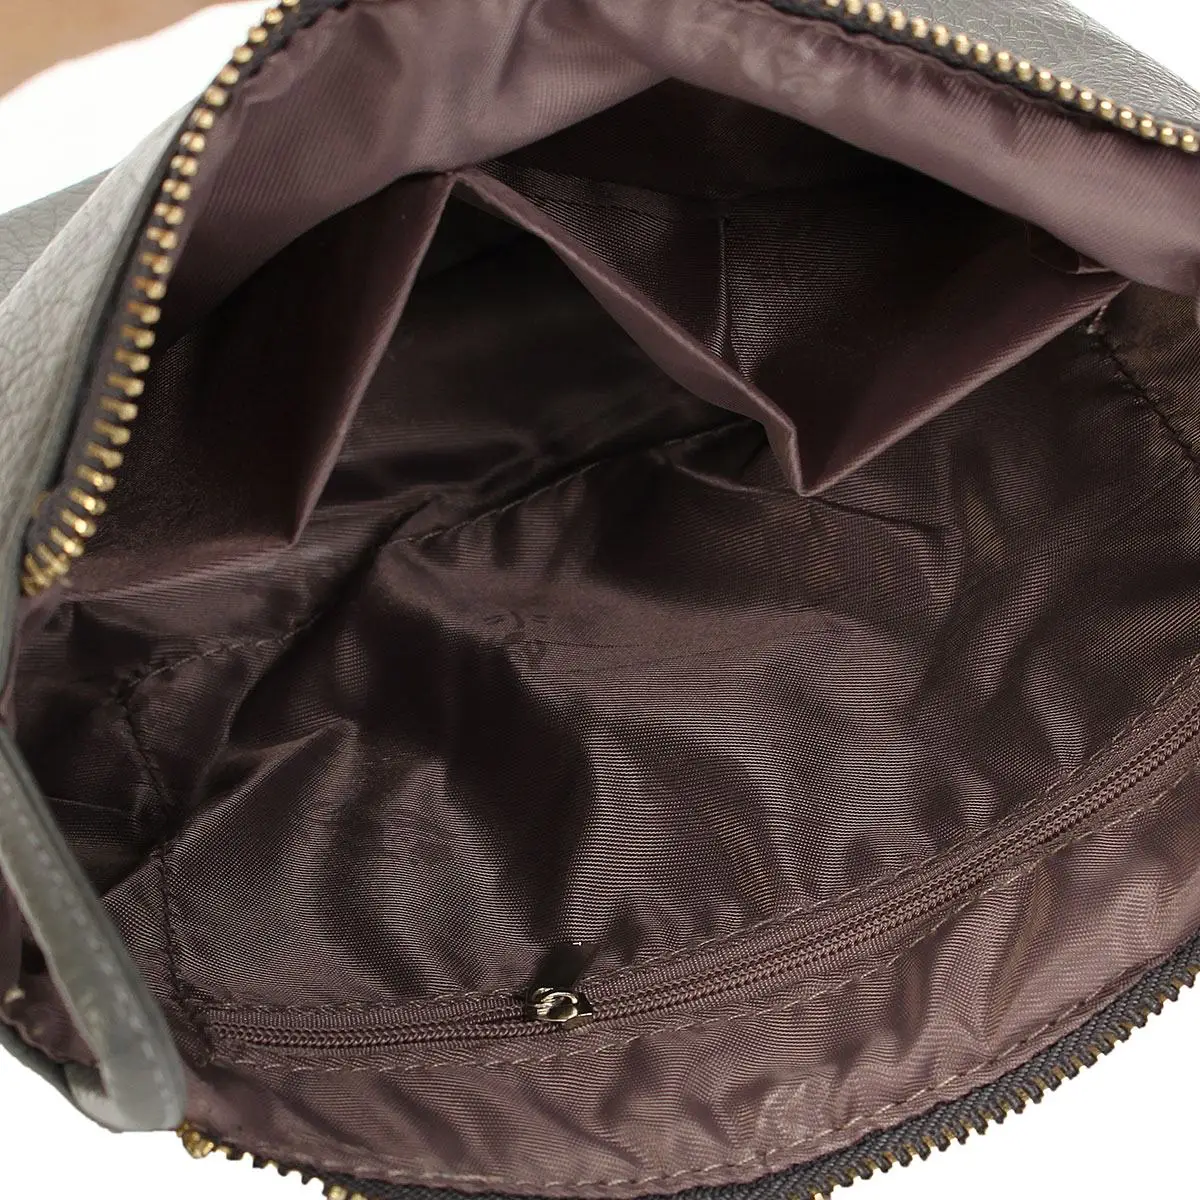 Aequeen мини-сумка новая модная сумка на плечо для телефона с монеткой Маленькая женская сумка-мессенджер из искусственной кожи Одноцветный клатч на молнии через плечо